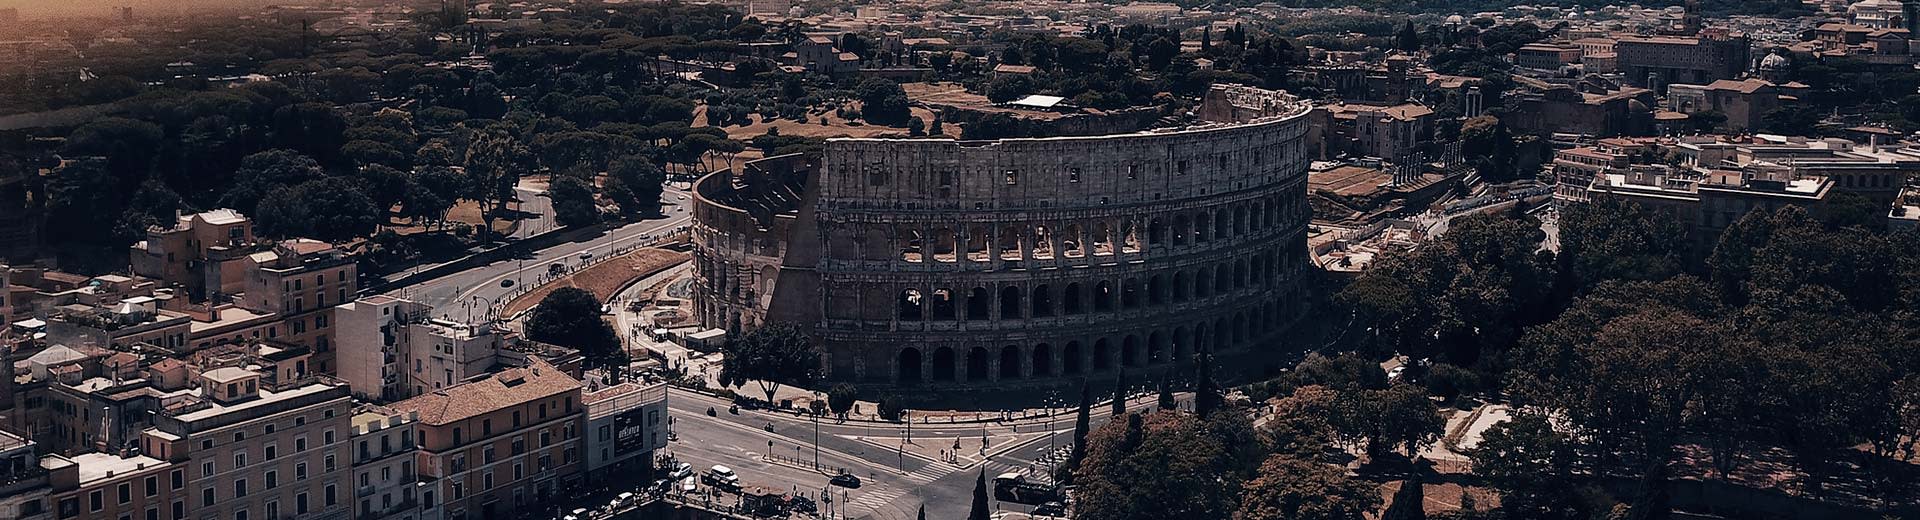 En la media luz del anochecer o el amanecer, el famoso Coliseo de Roma domina la imagen, rodeada de edificios.